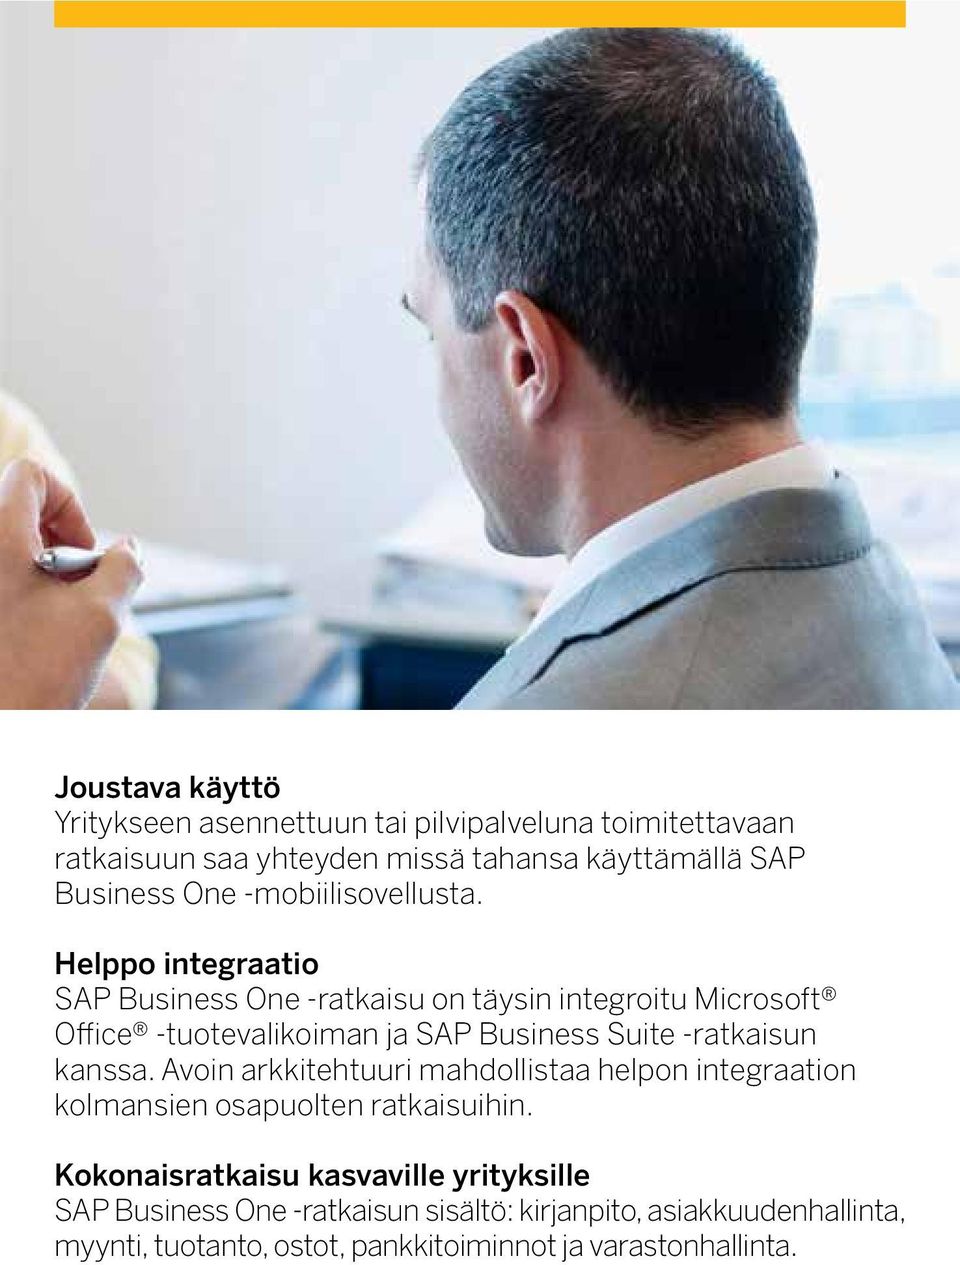 Helppo integraatio SAP Business One -ratkaisu on täysin integroitu Microsoft Office -tuotevalikoiman ja SAP Business Suite -ratkaisun kanssa.